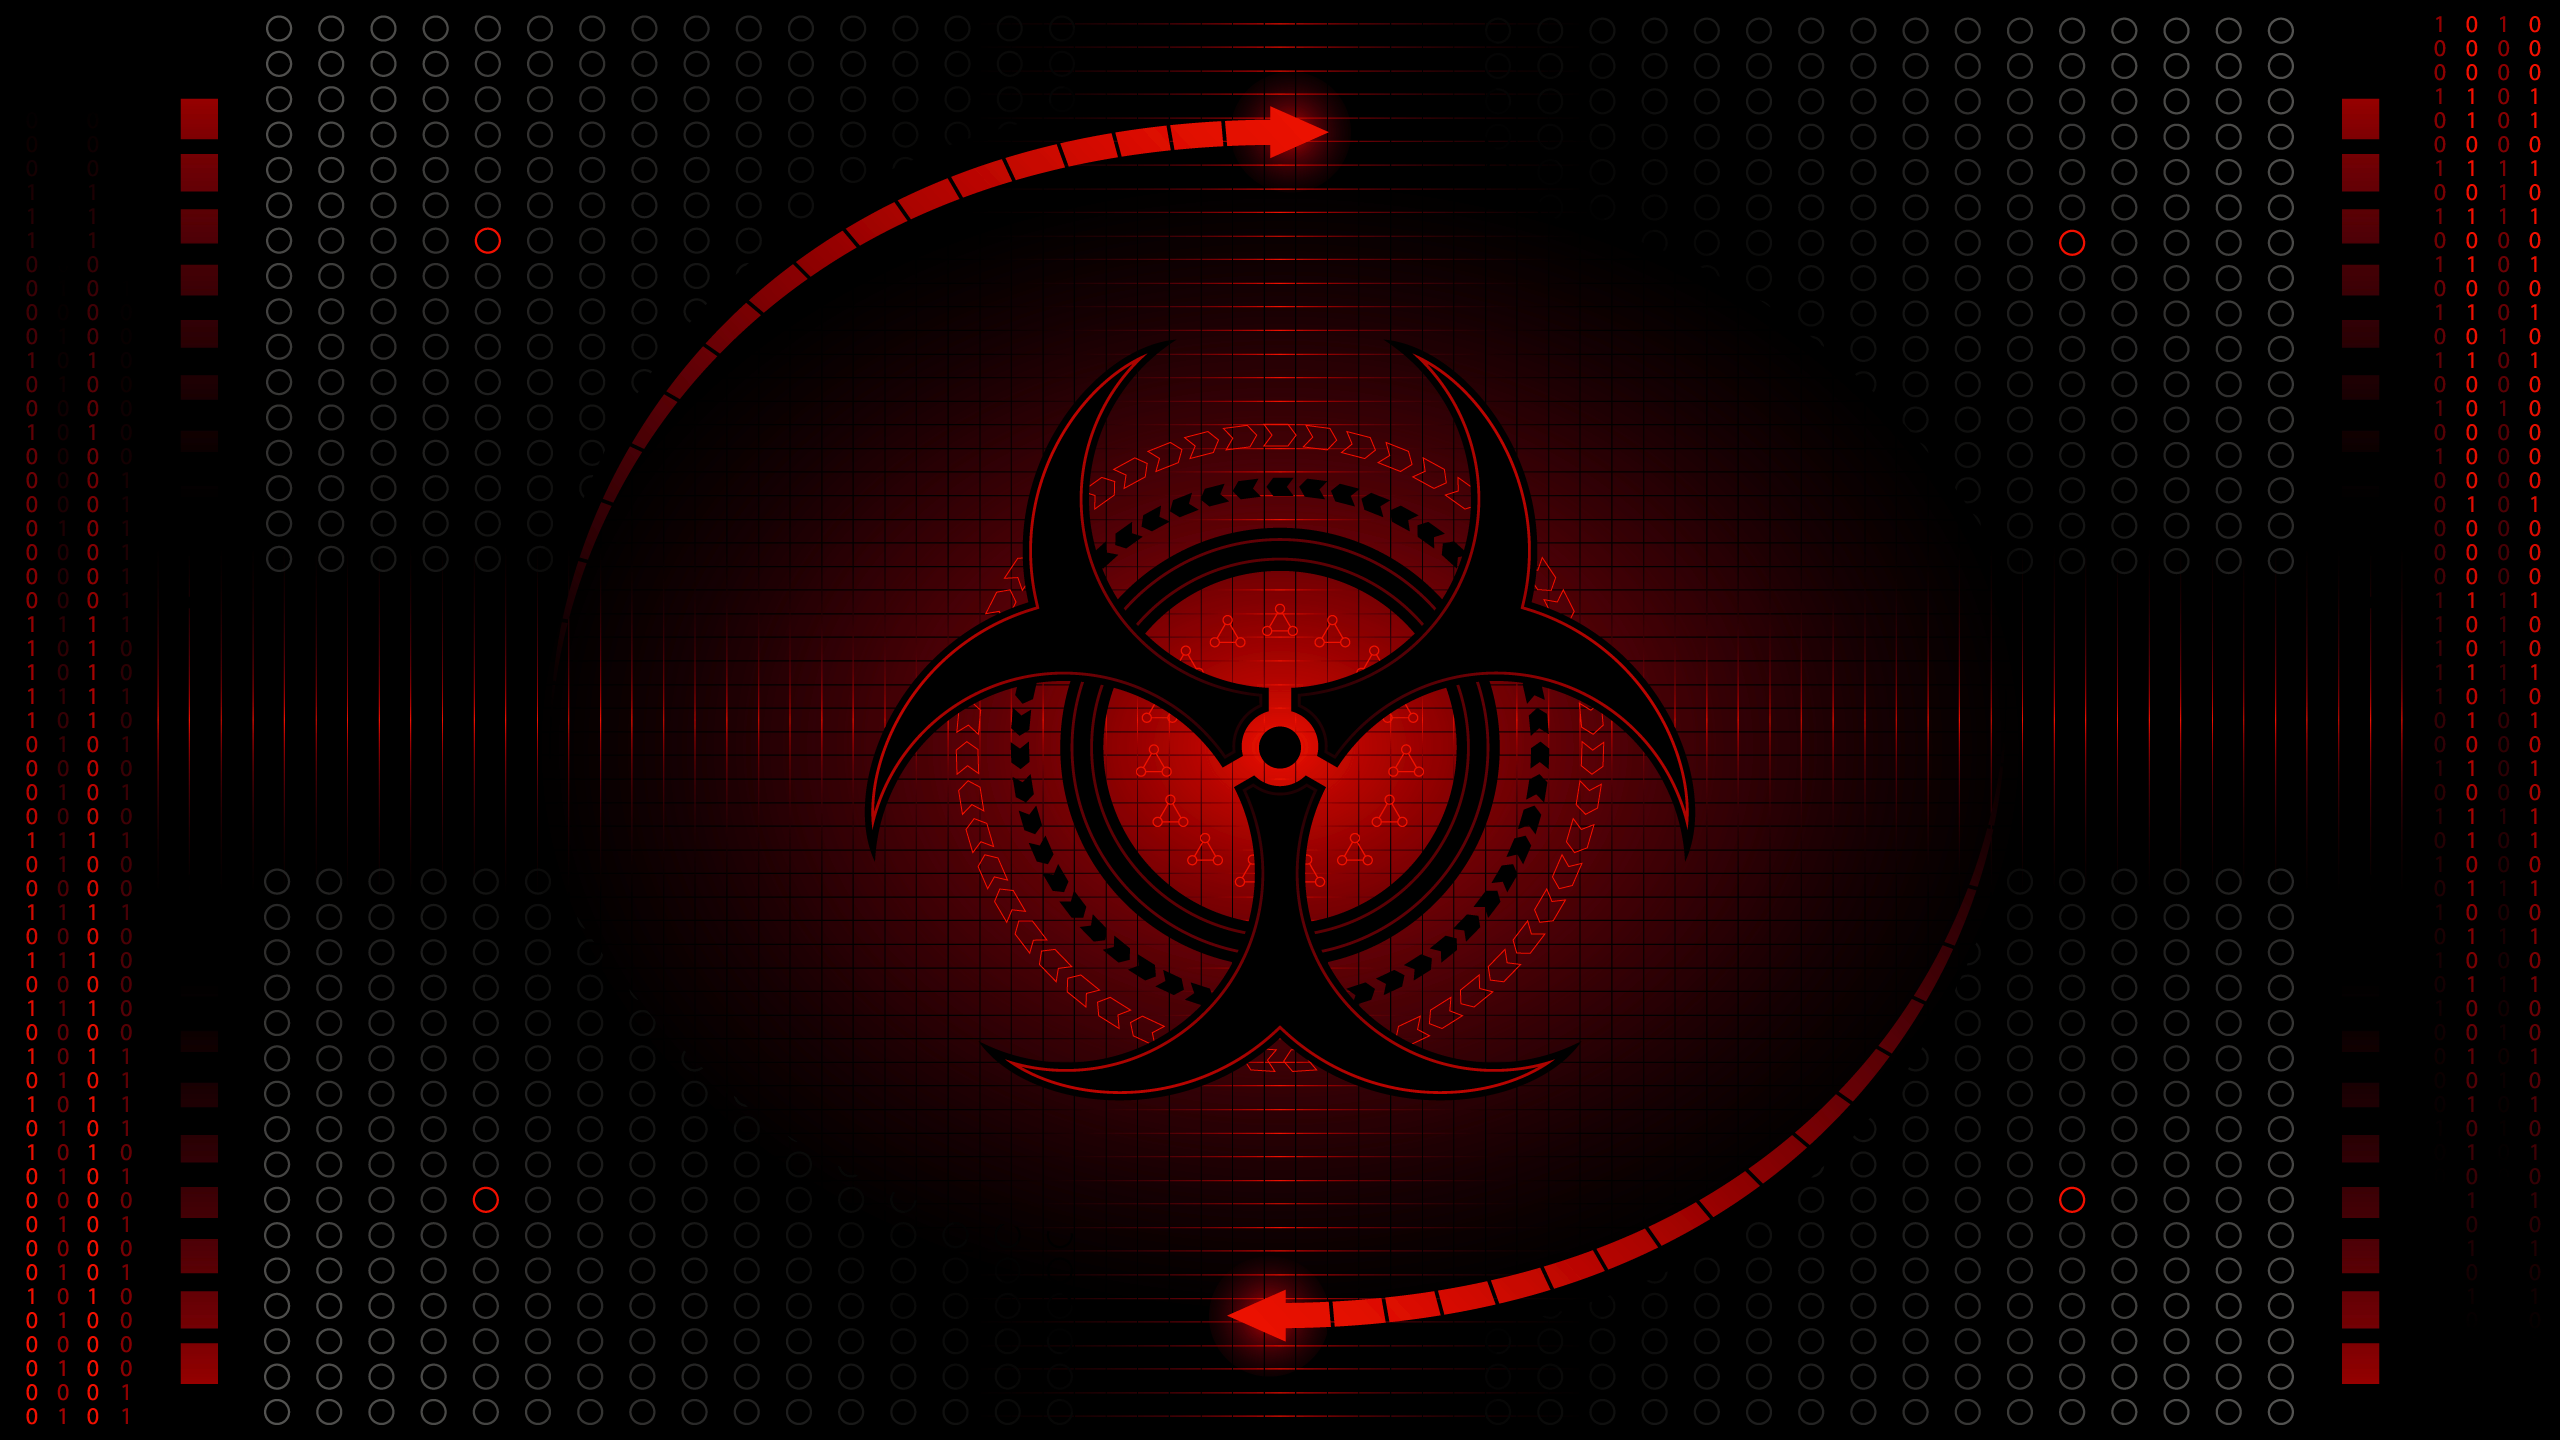 Biohazard Computer Wallpaper, Desktop Background 2560x1440 Id